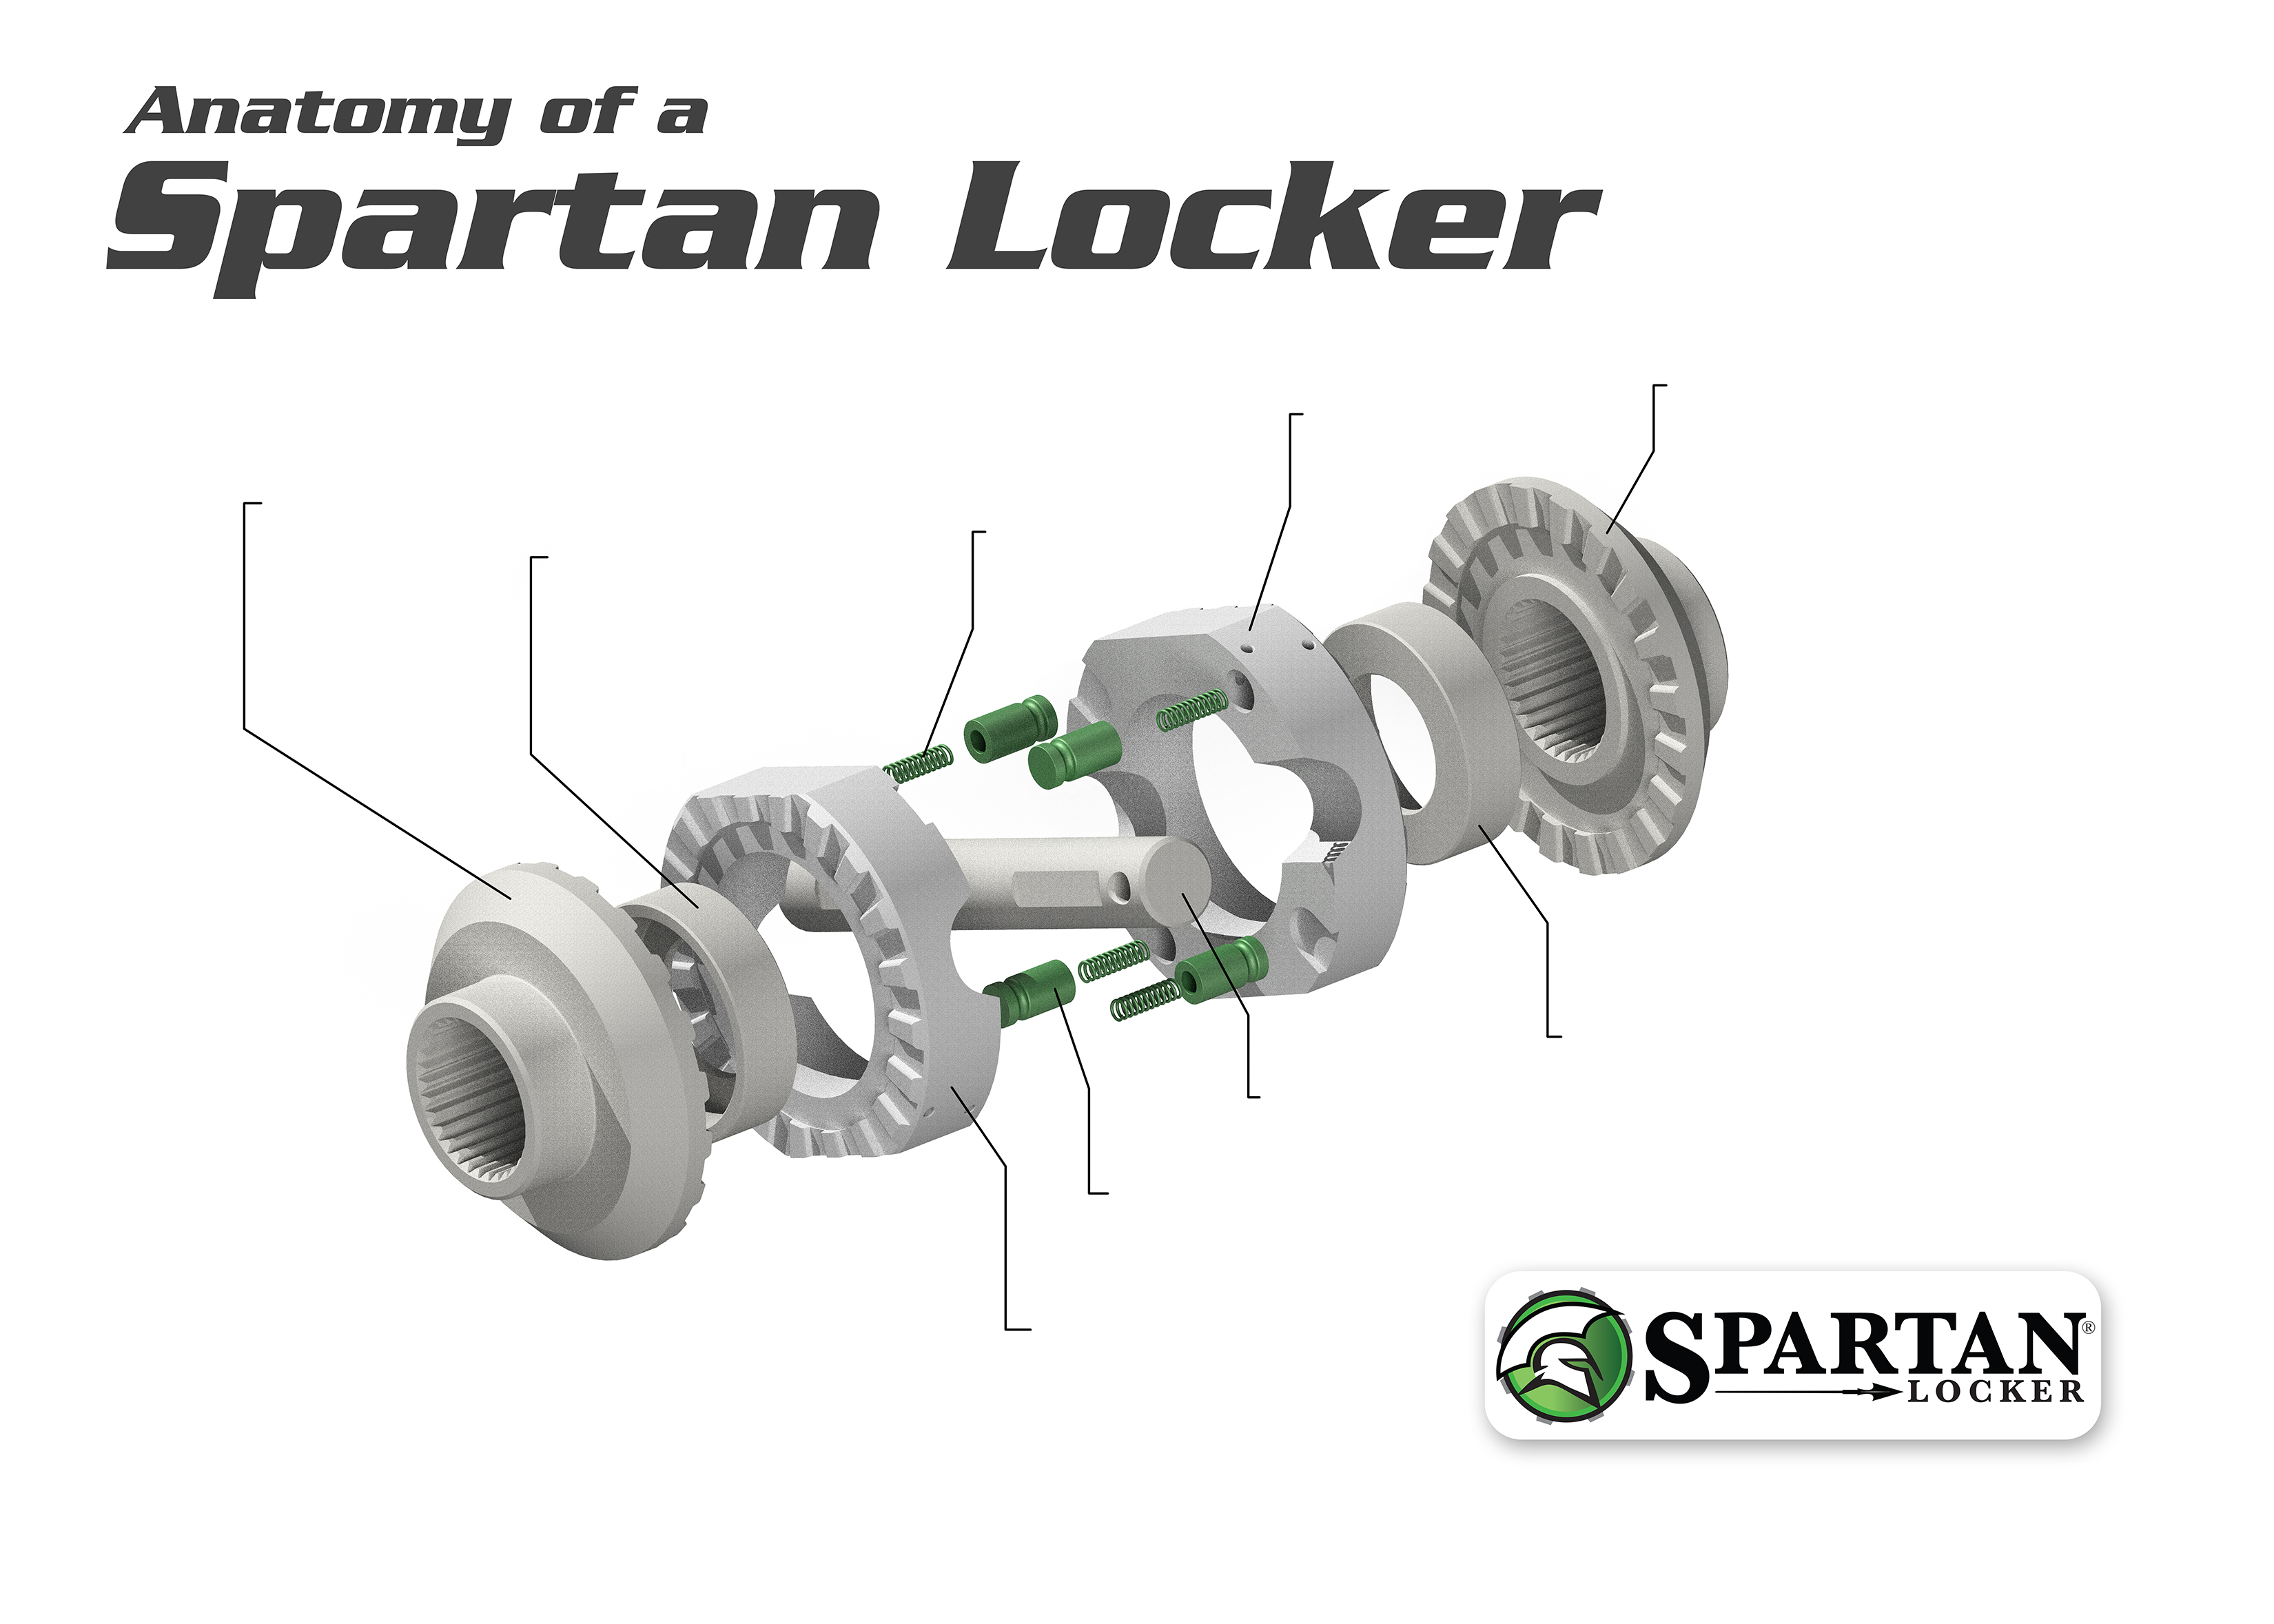 Spartan Locker for Dana 60, 30 spline axles, includes heavy-duty cross pin shaft